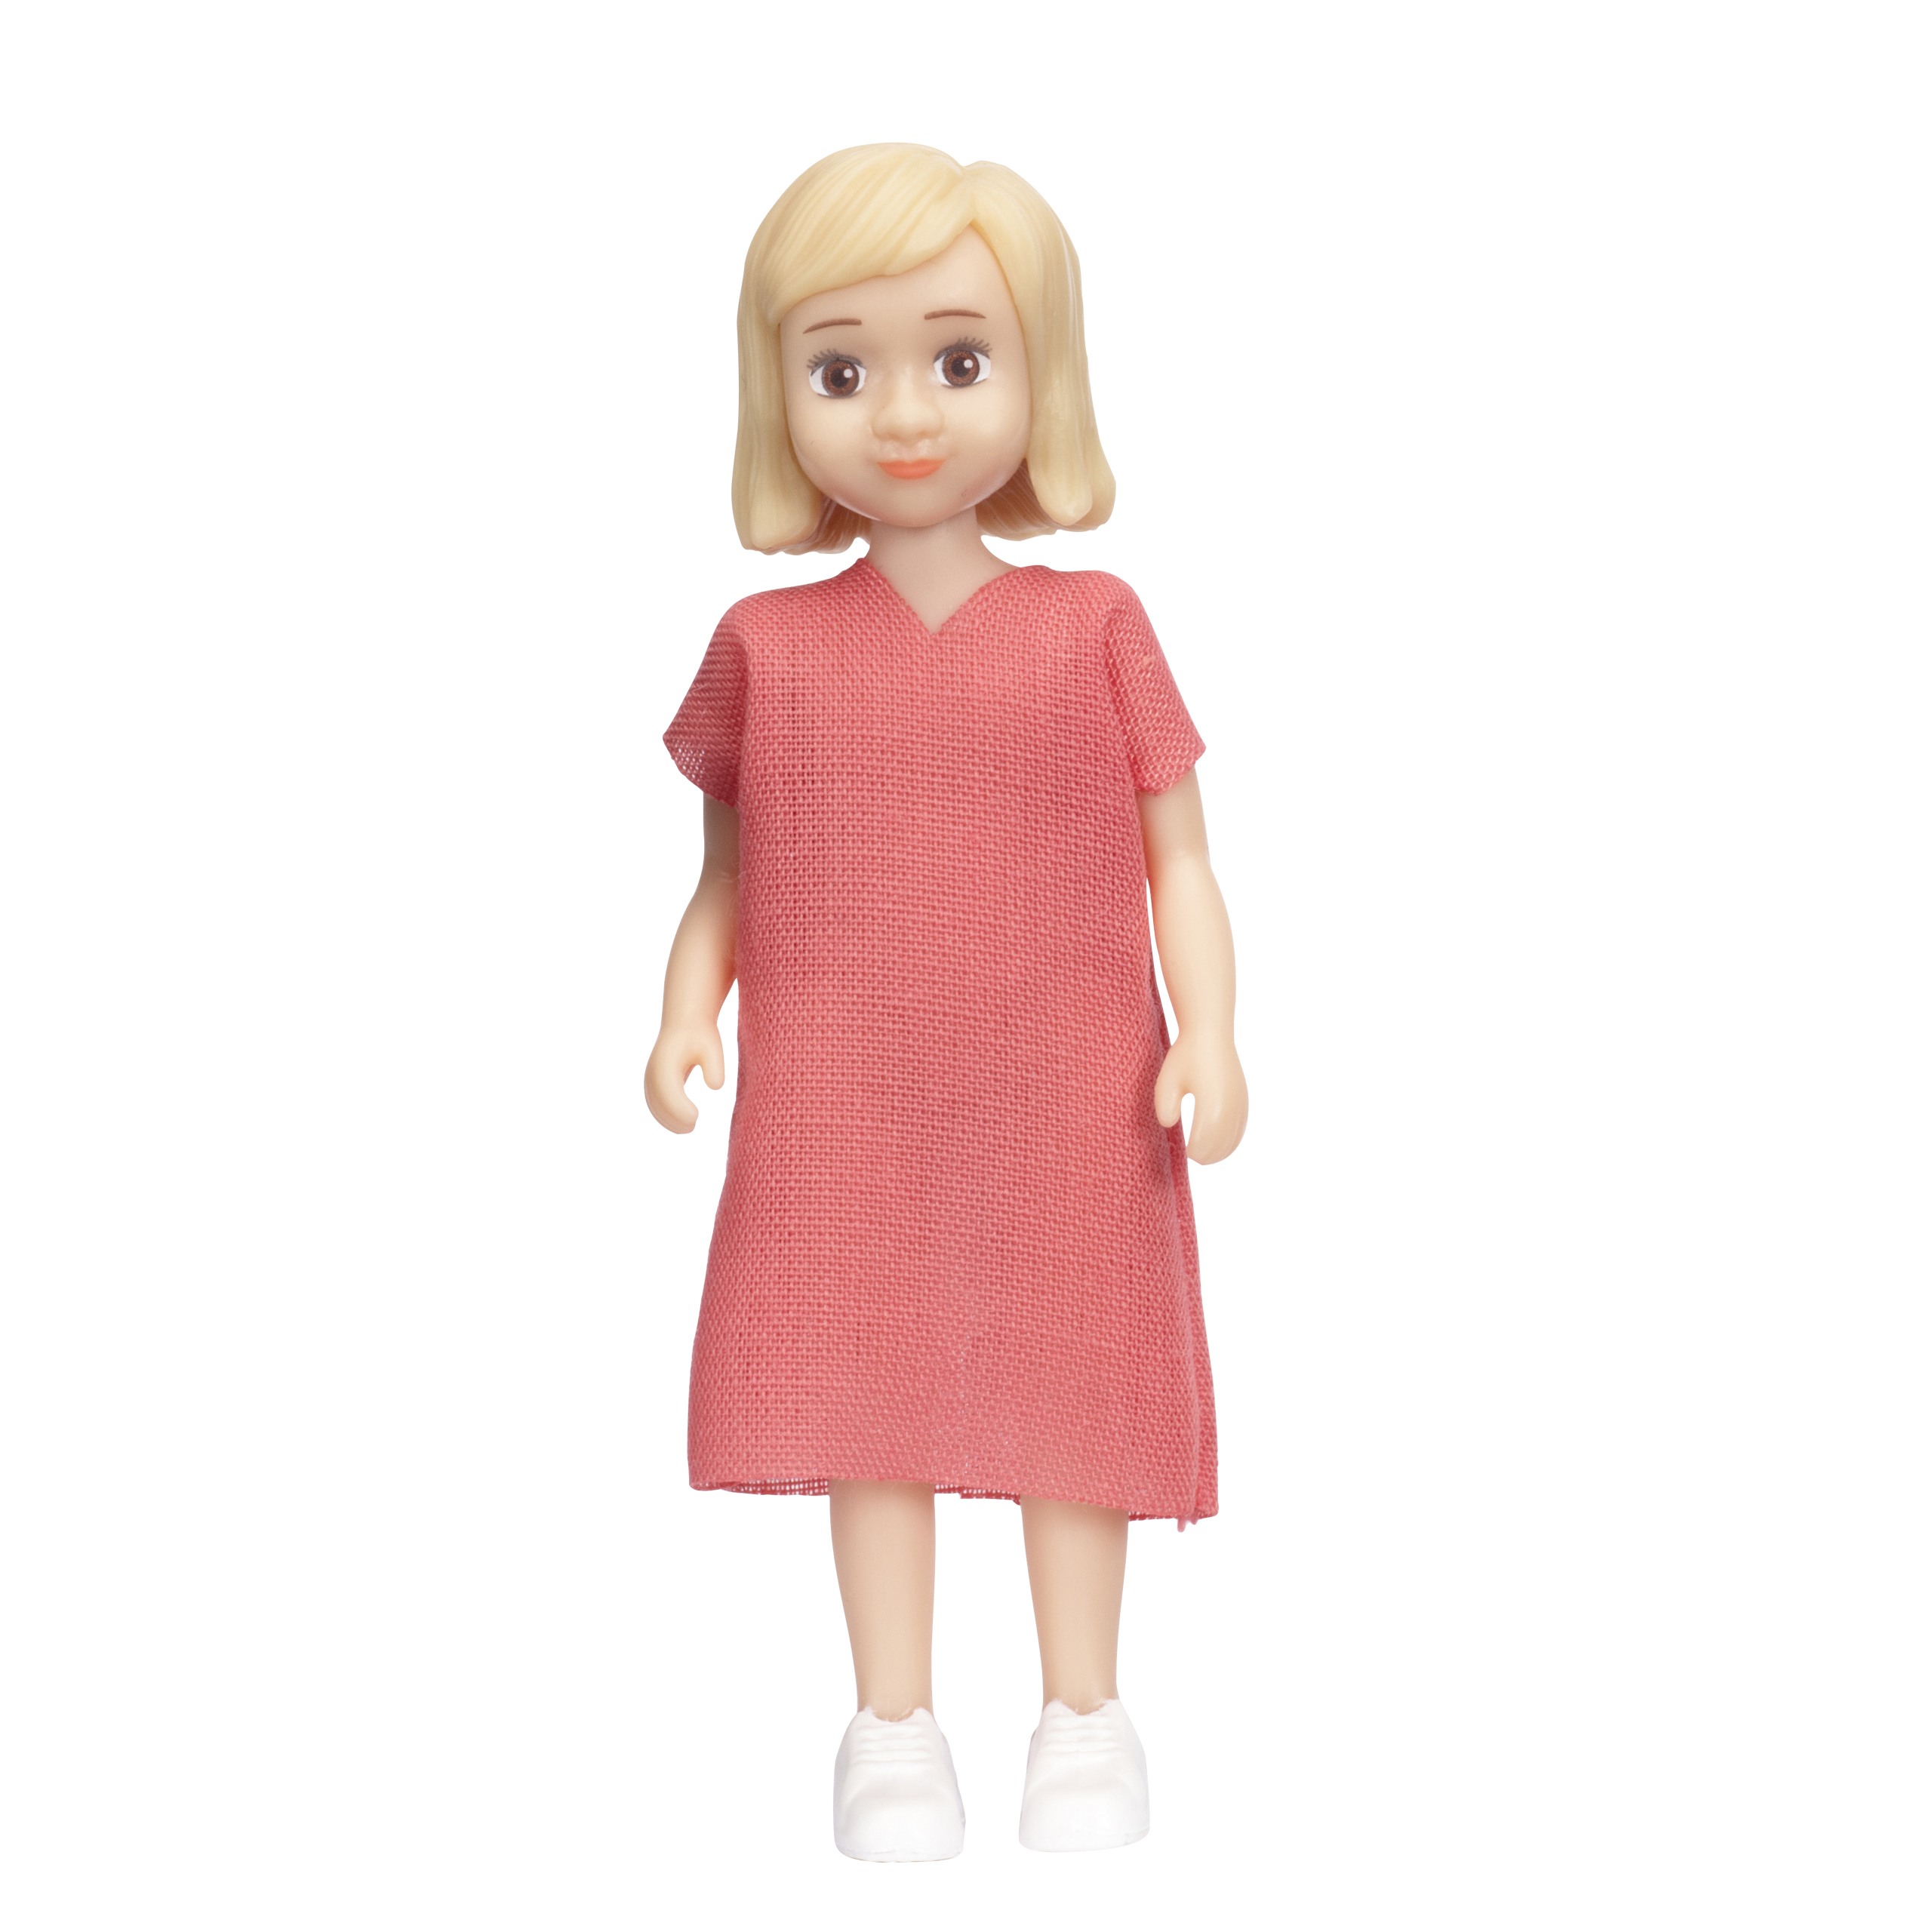 Lundby lundby dollhouse doll charlie girl